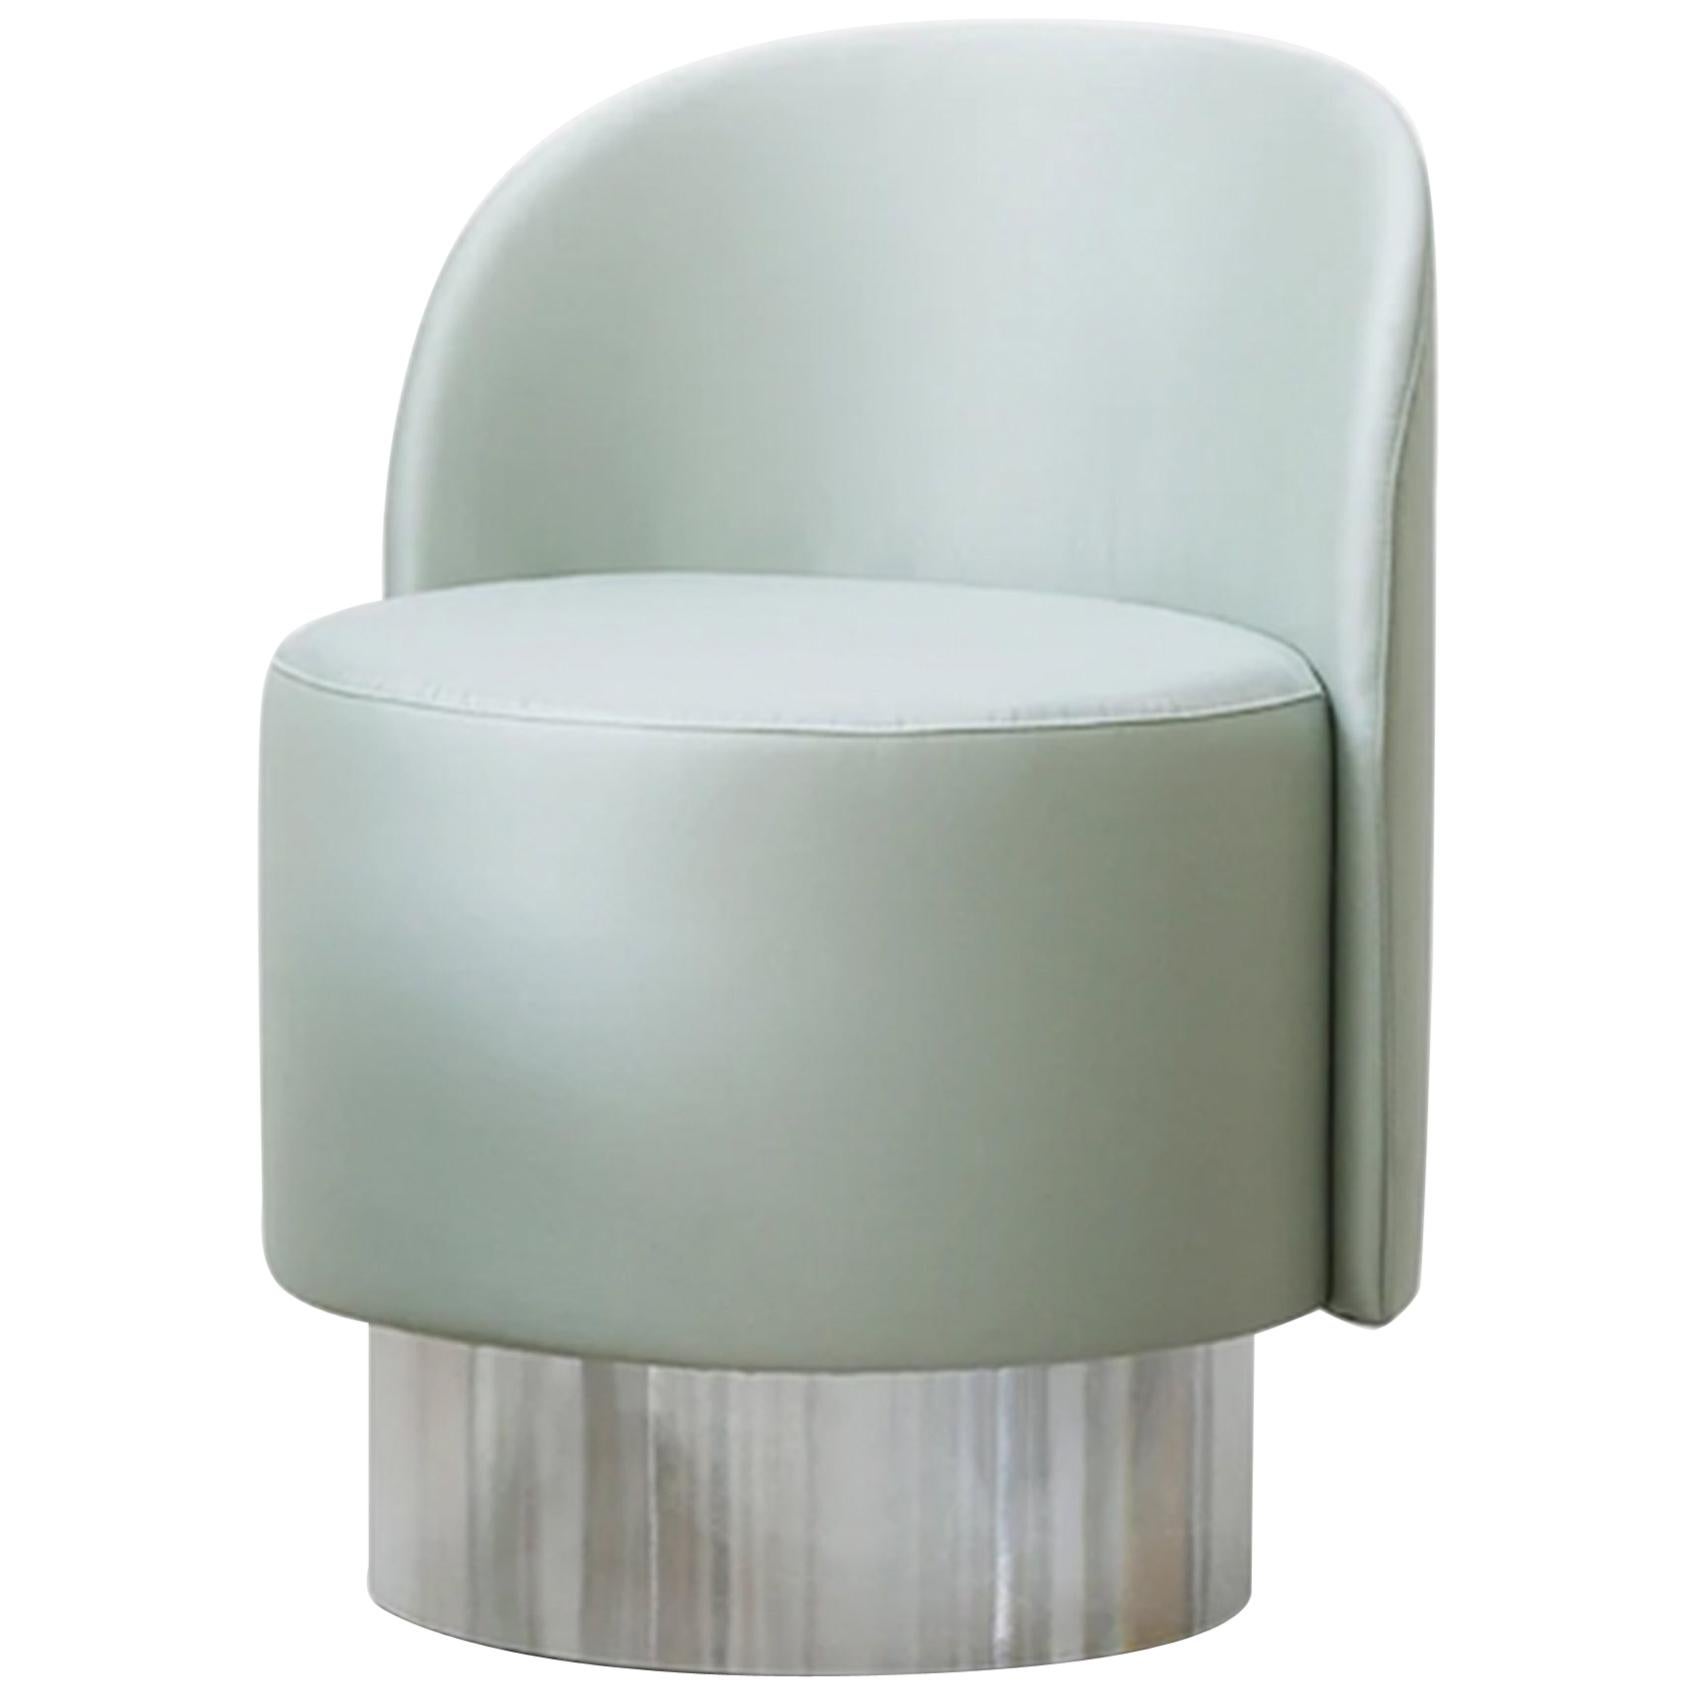 Ensemble de deux chaises Tacchini personnalisables en pastille conçues par Studiopepe